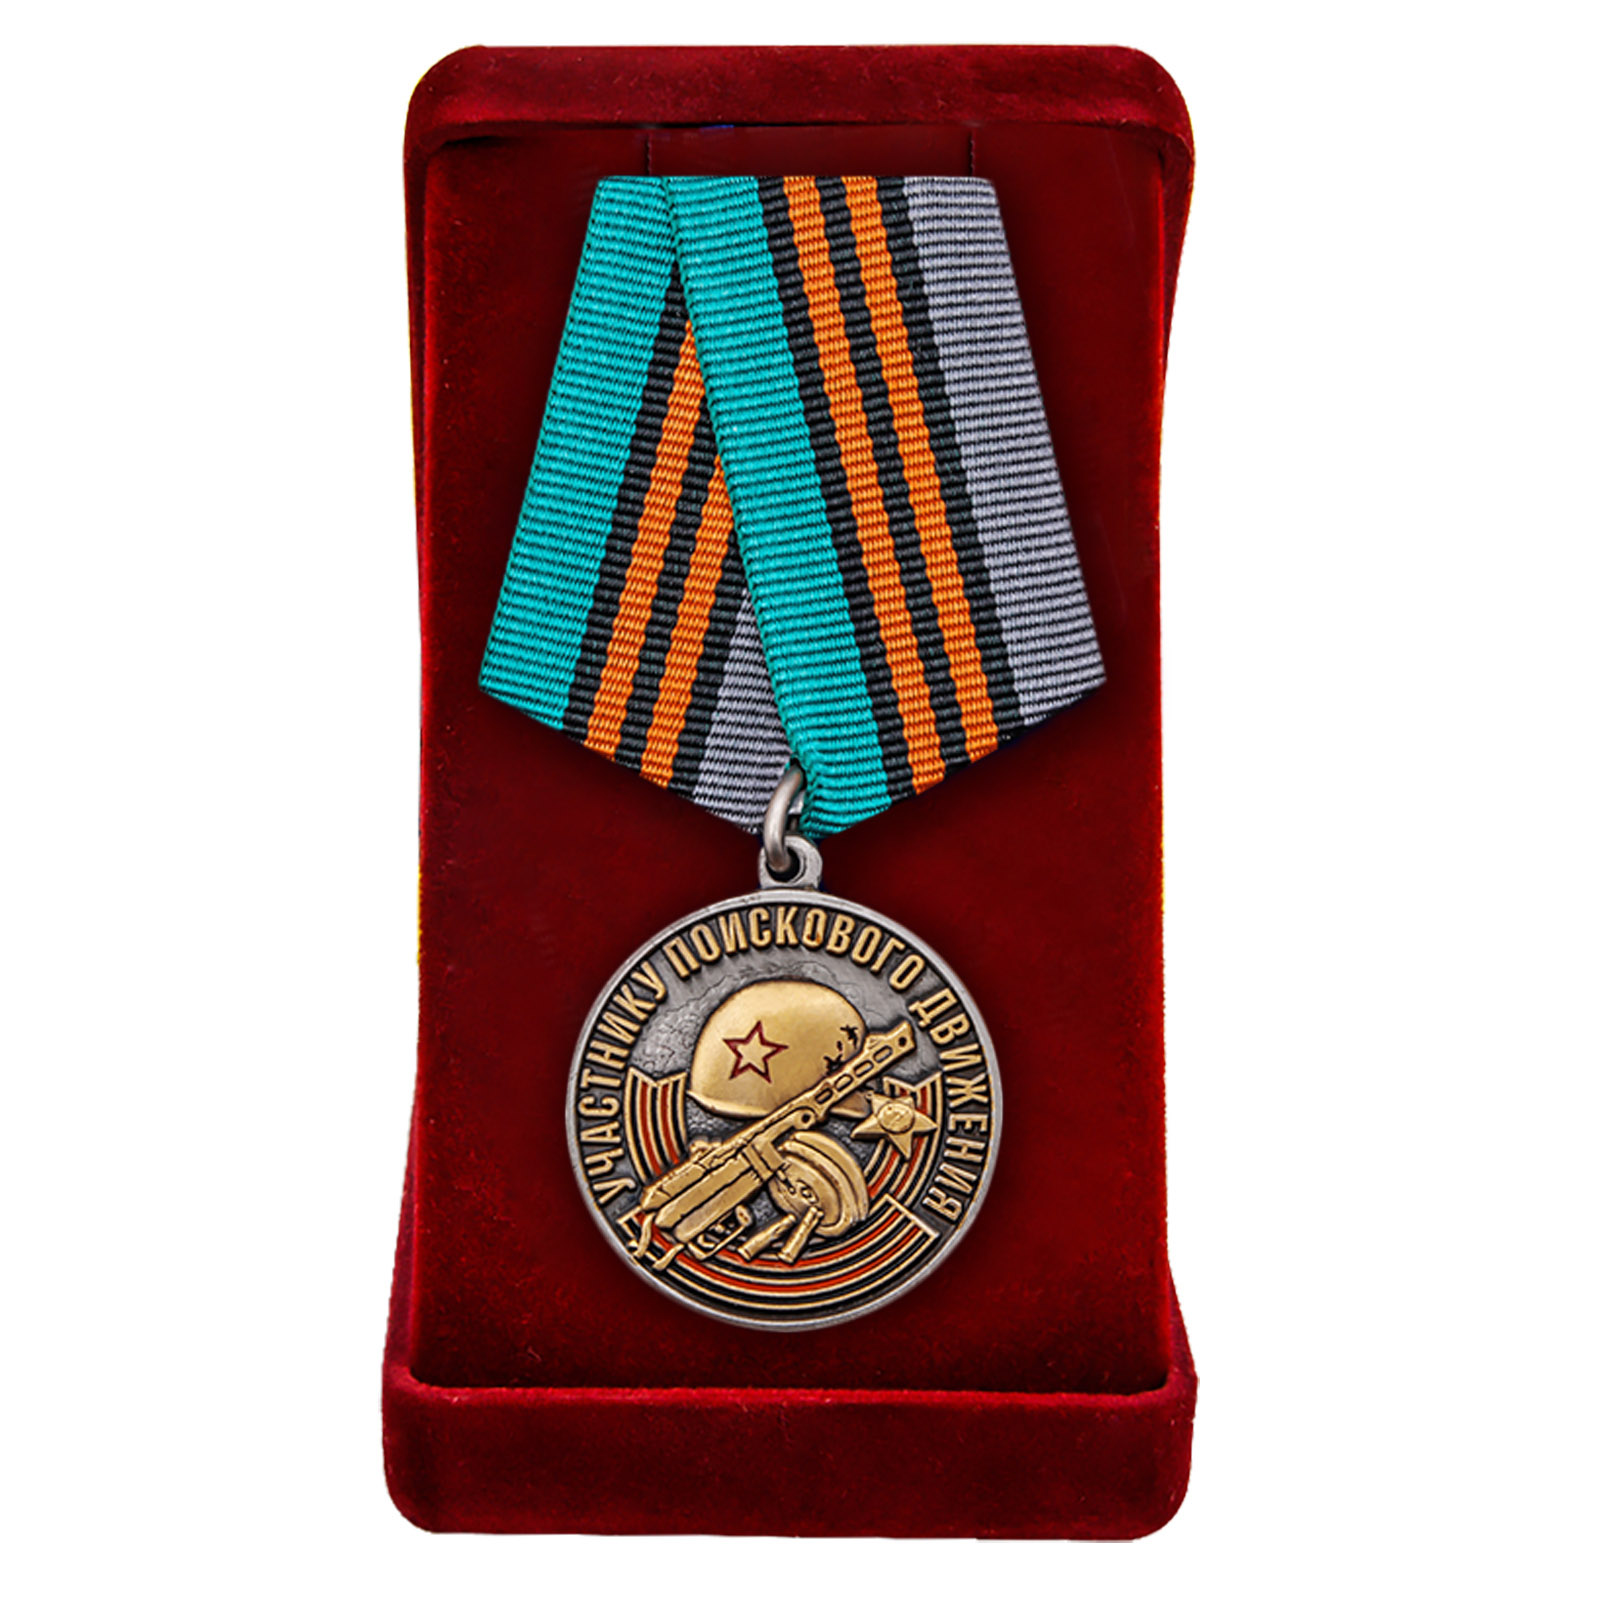 Купить медаль Участнику поискового движения к юбилею Победы с доставкой